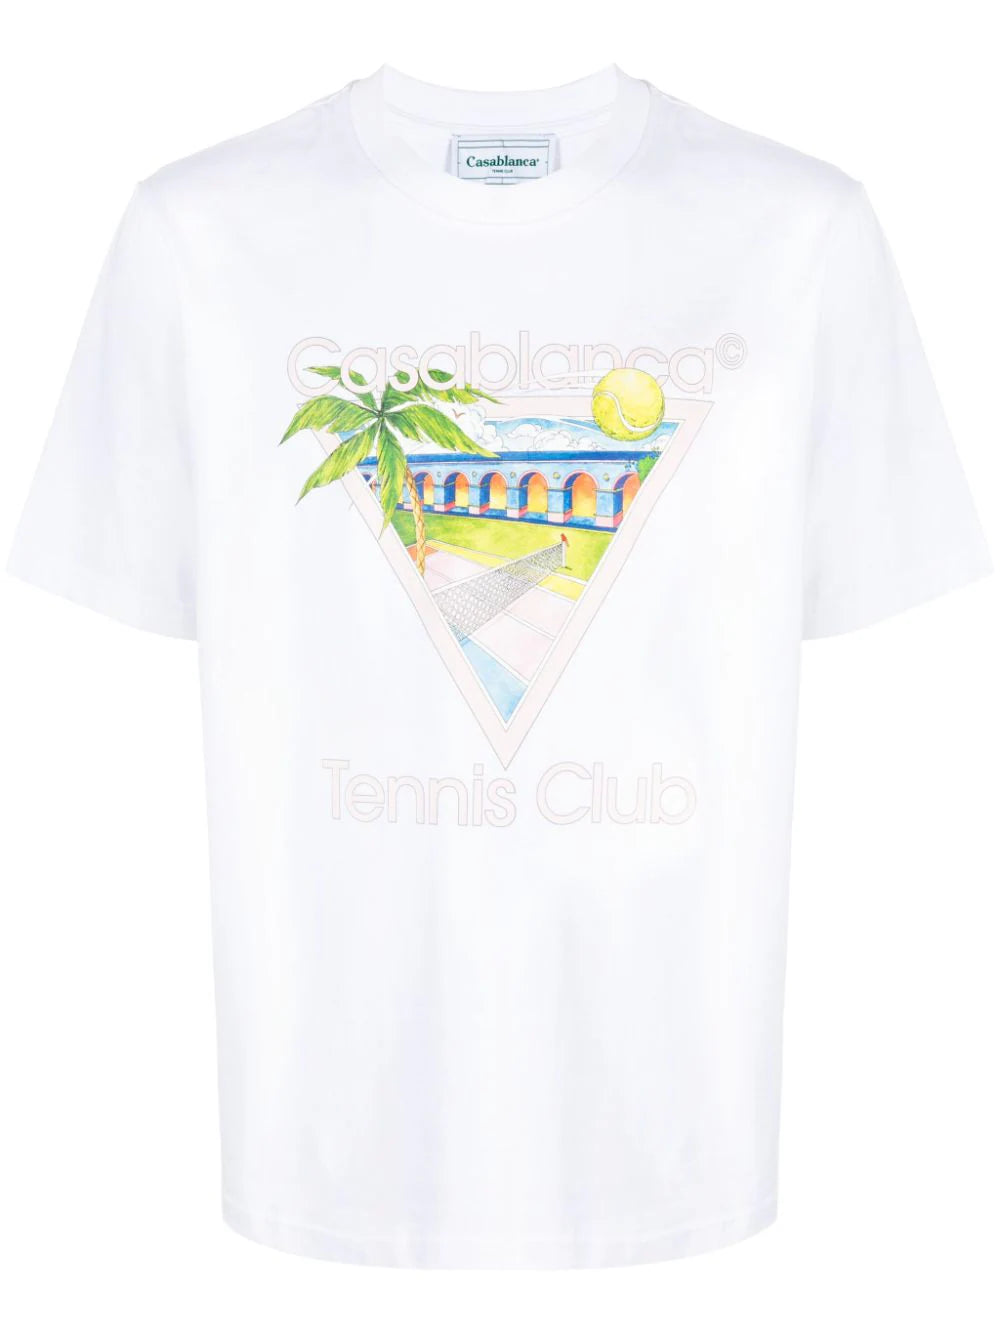 Casablanca t-shirt Tennis Club Icon en soie